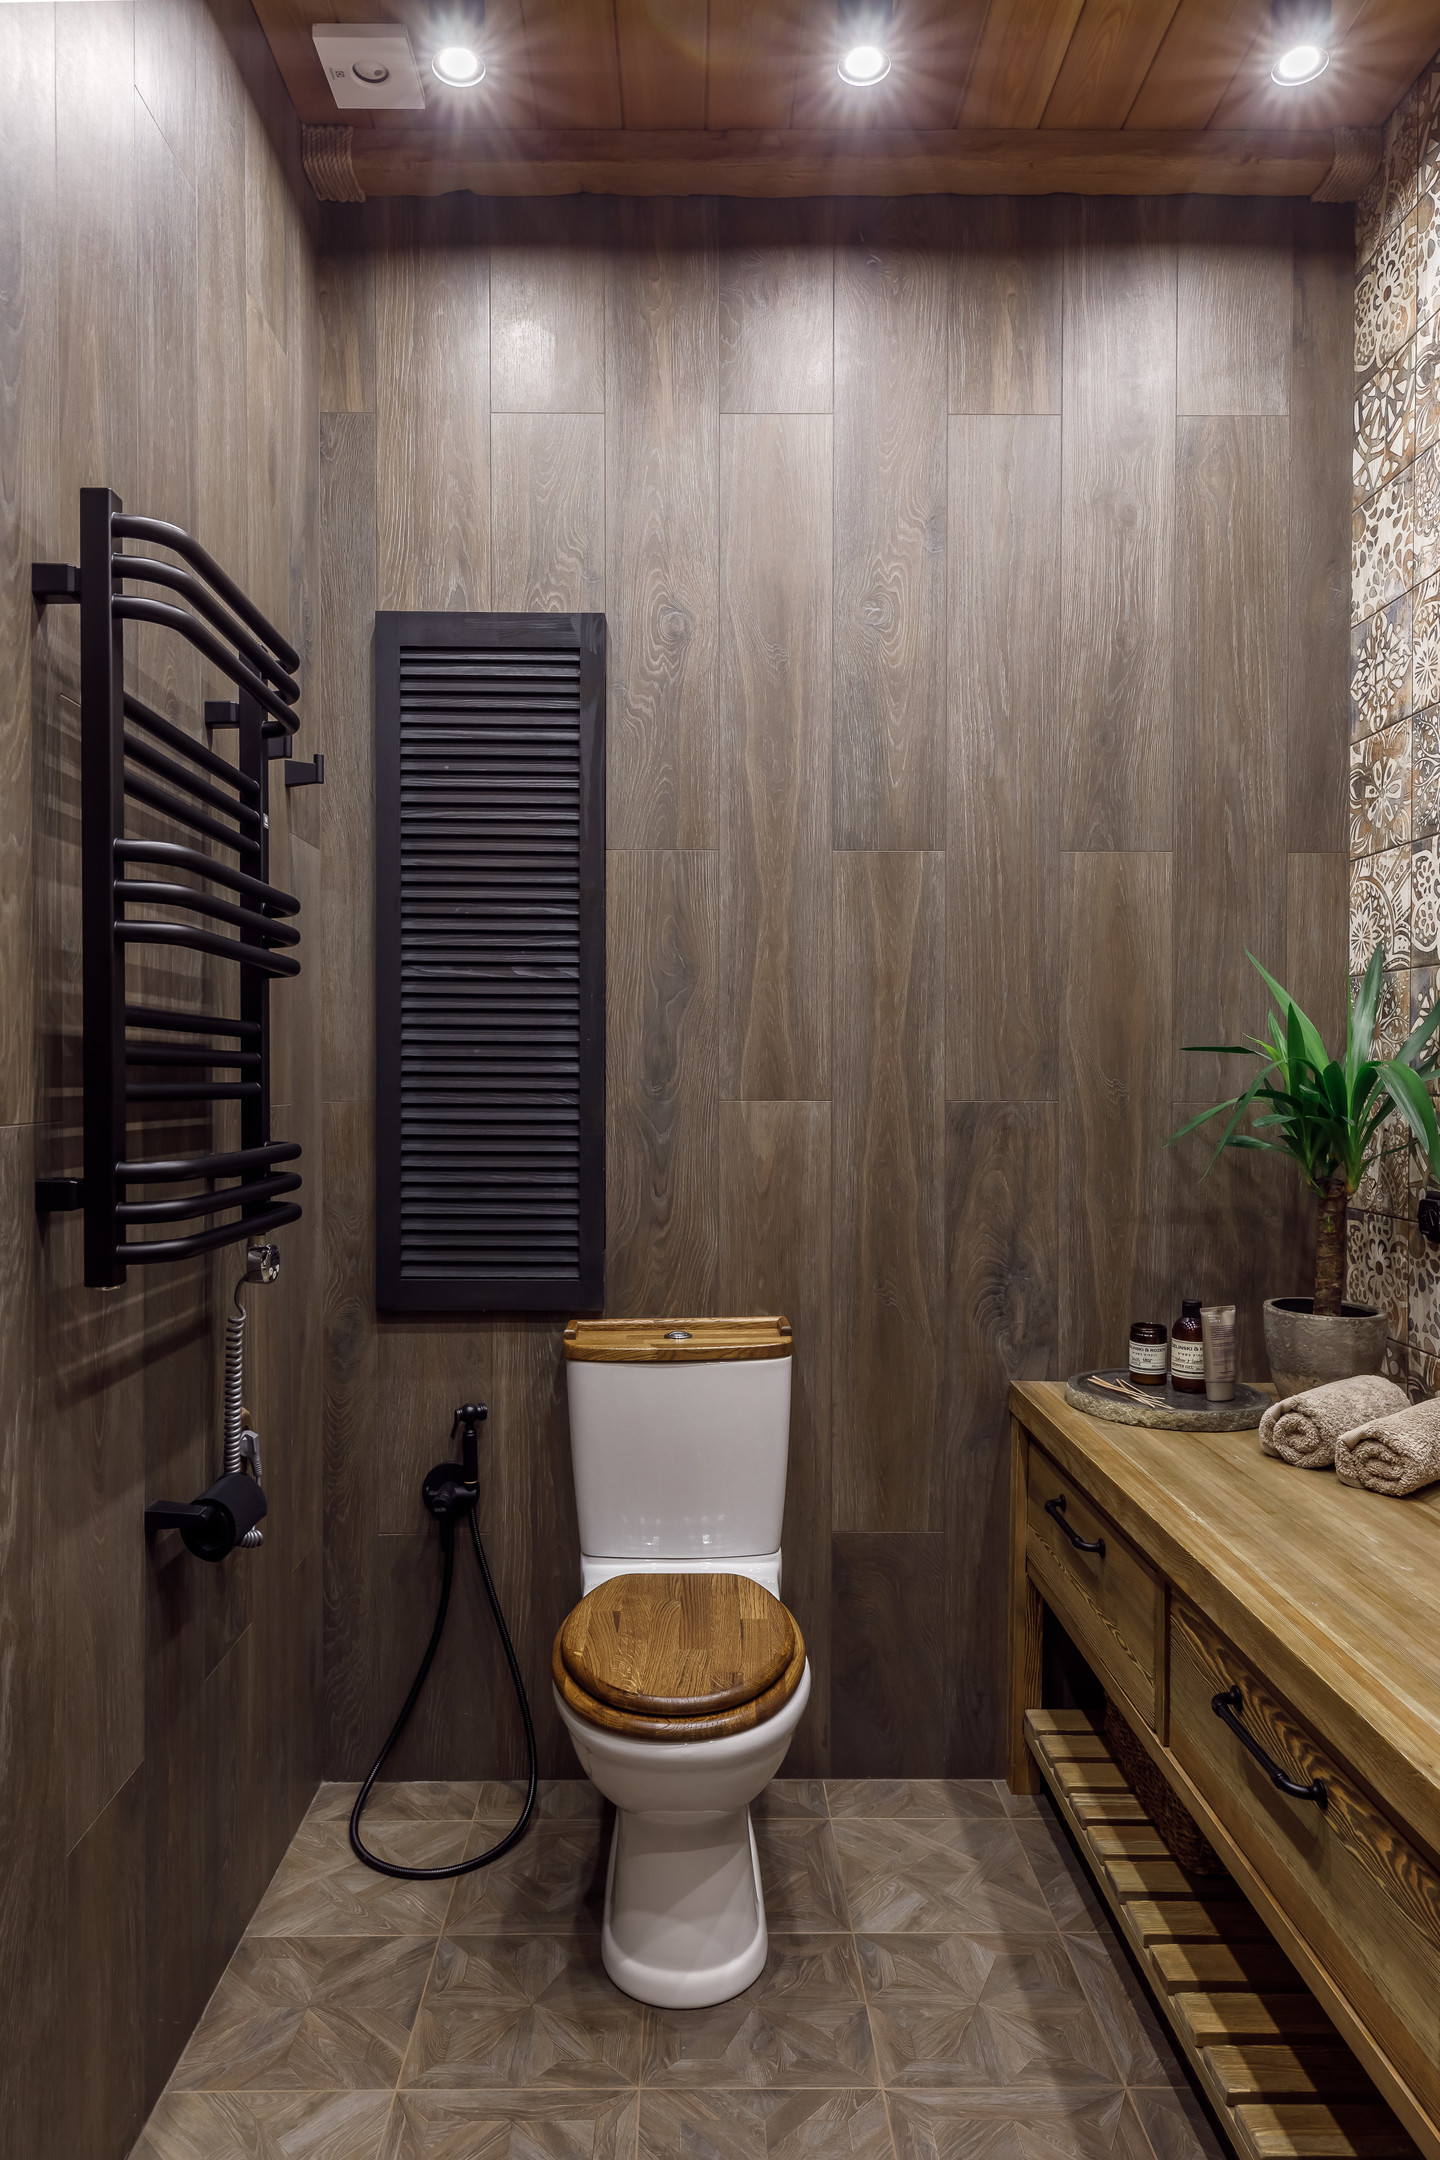 Bức tường của 2 khu vực phân biệt rõ ràng: Tường gỗ cho nhà vệ sinh và tường ốp gạch bông cho bồn rửa tay và buồng tắm.